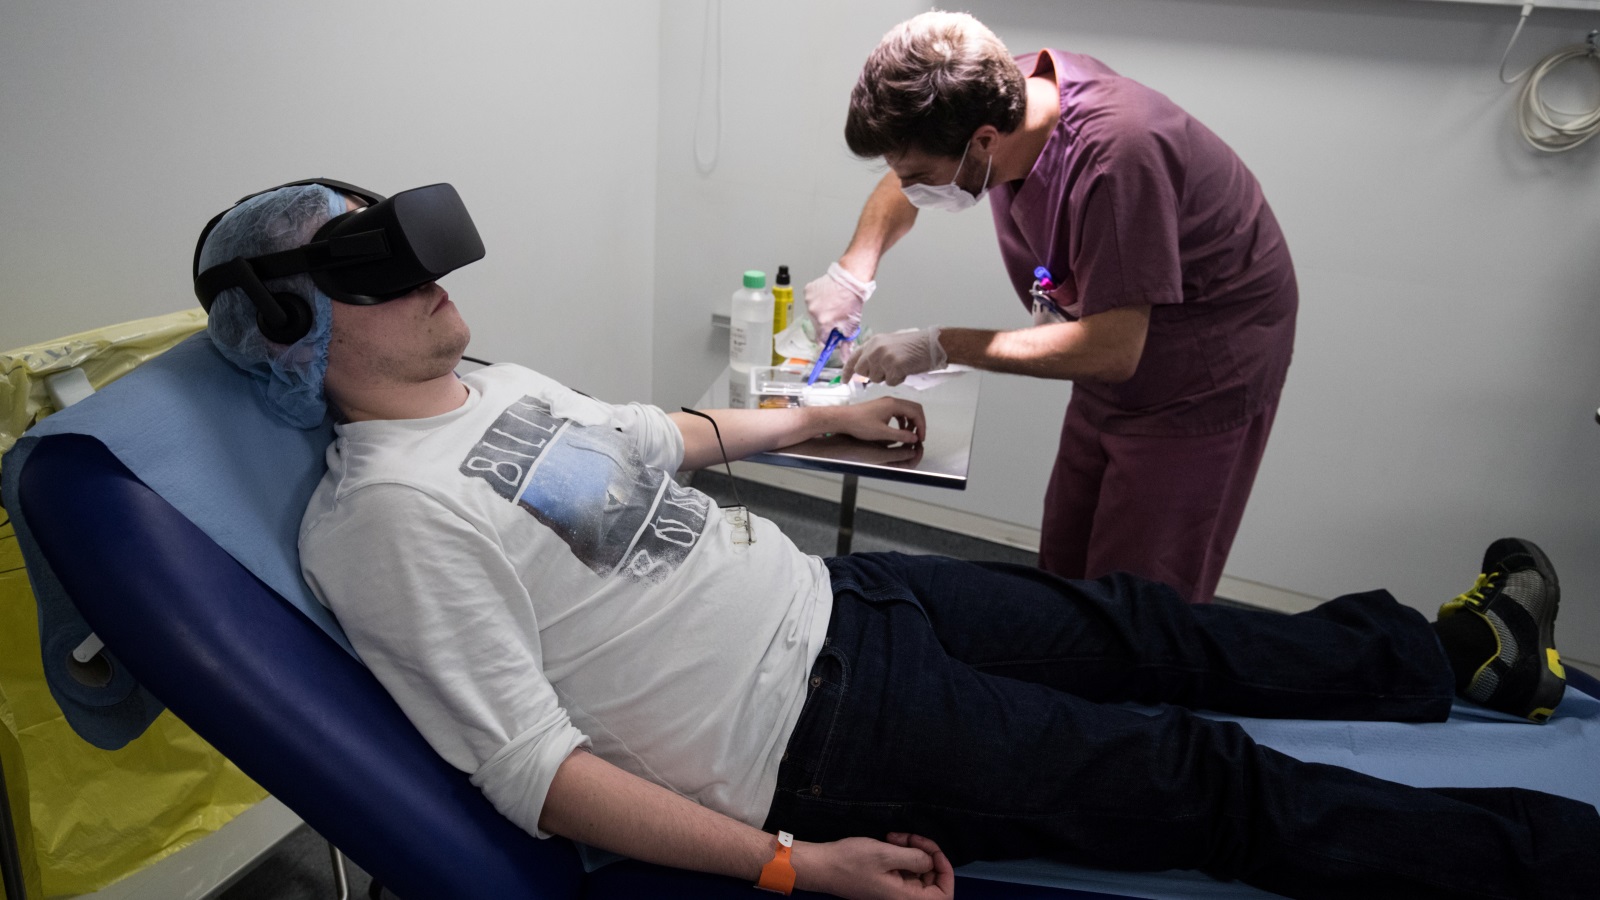 تقنية جديدة لتخفيف الألم عن طريق الواقع الإفتراضي